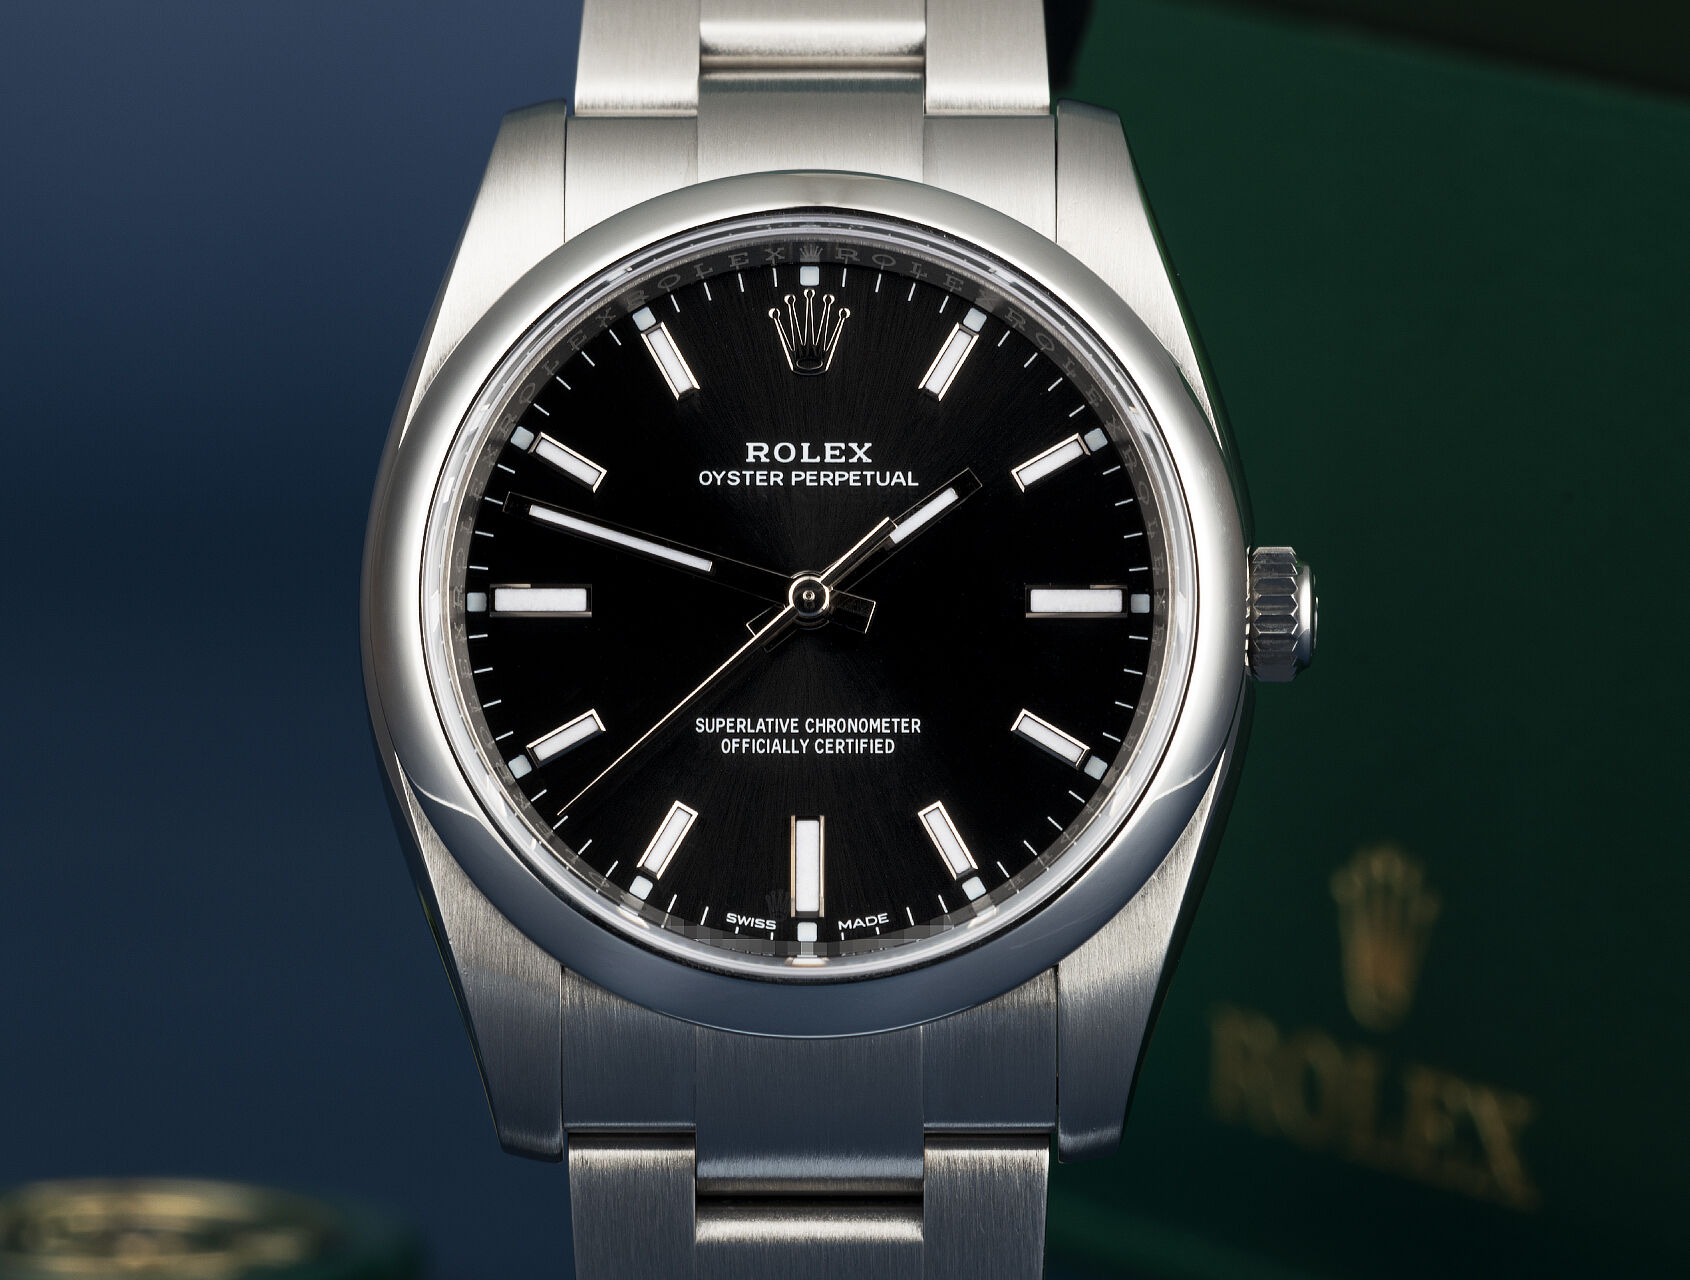 ref 114200 | 114200 - Box & Certificate | Rolex Oyster Perpetual